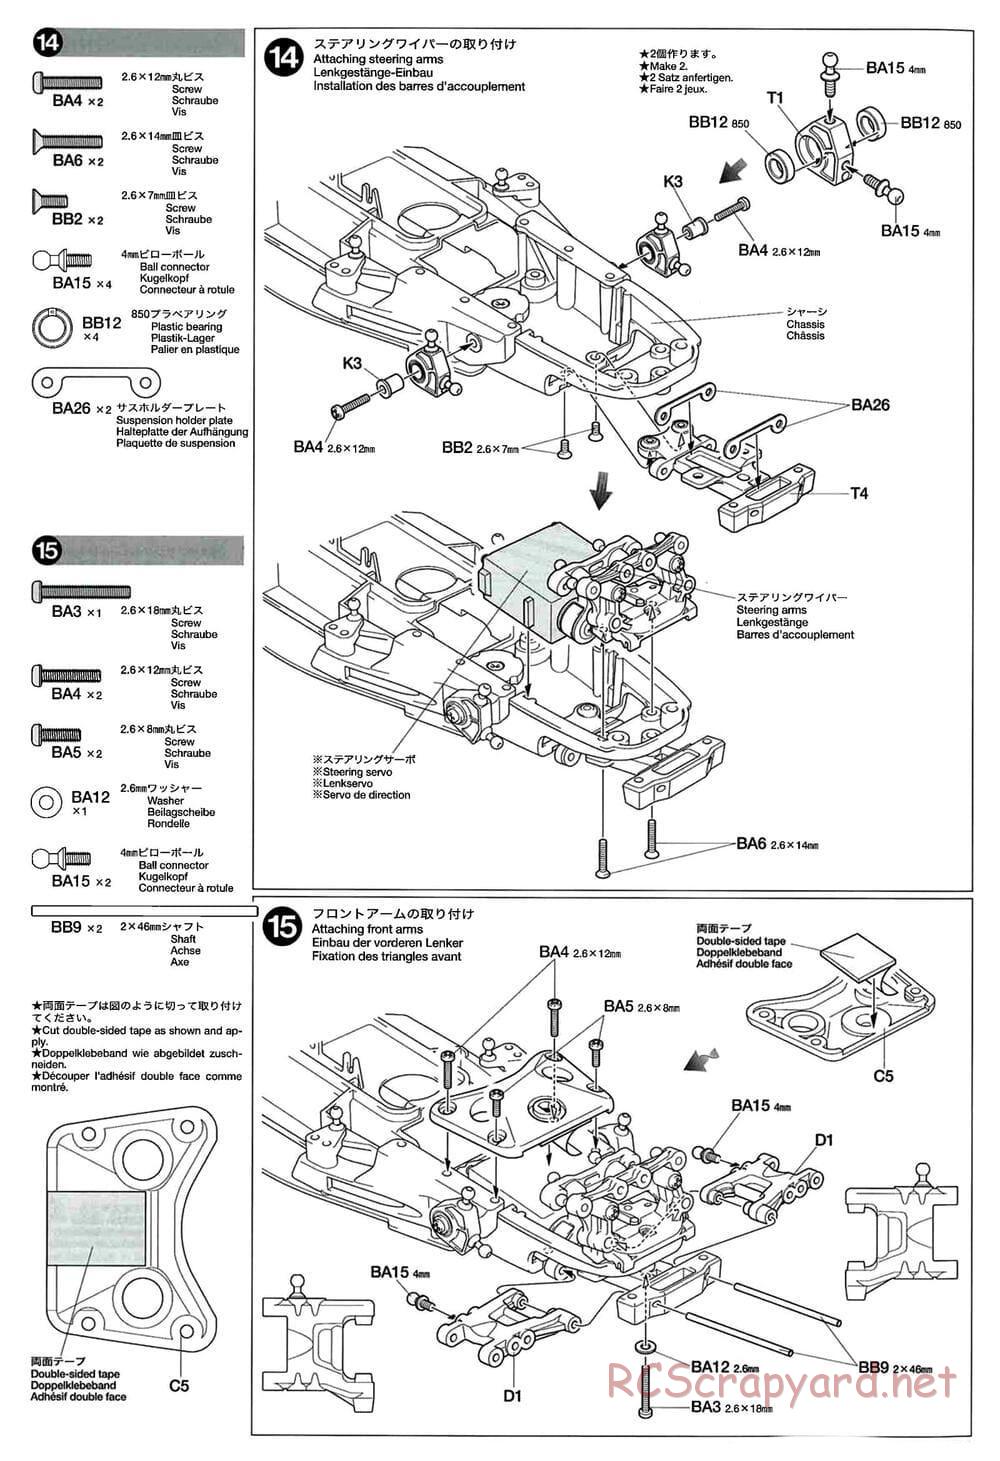 Tamiya - GT-01 Chassis - Manual - Page 10